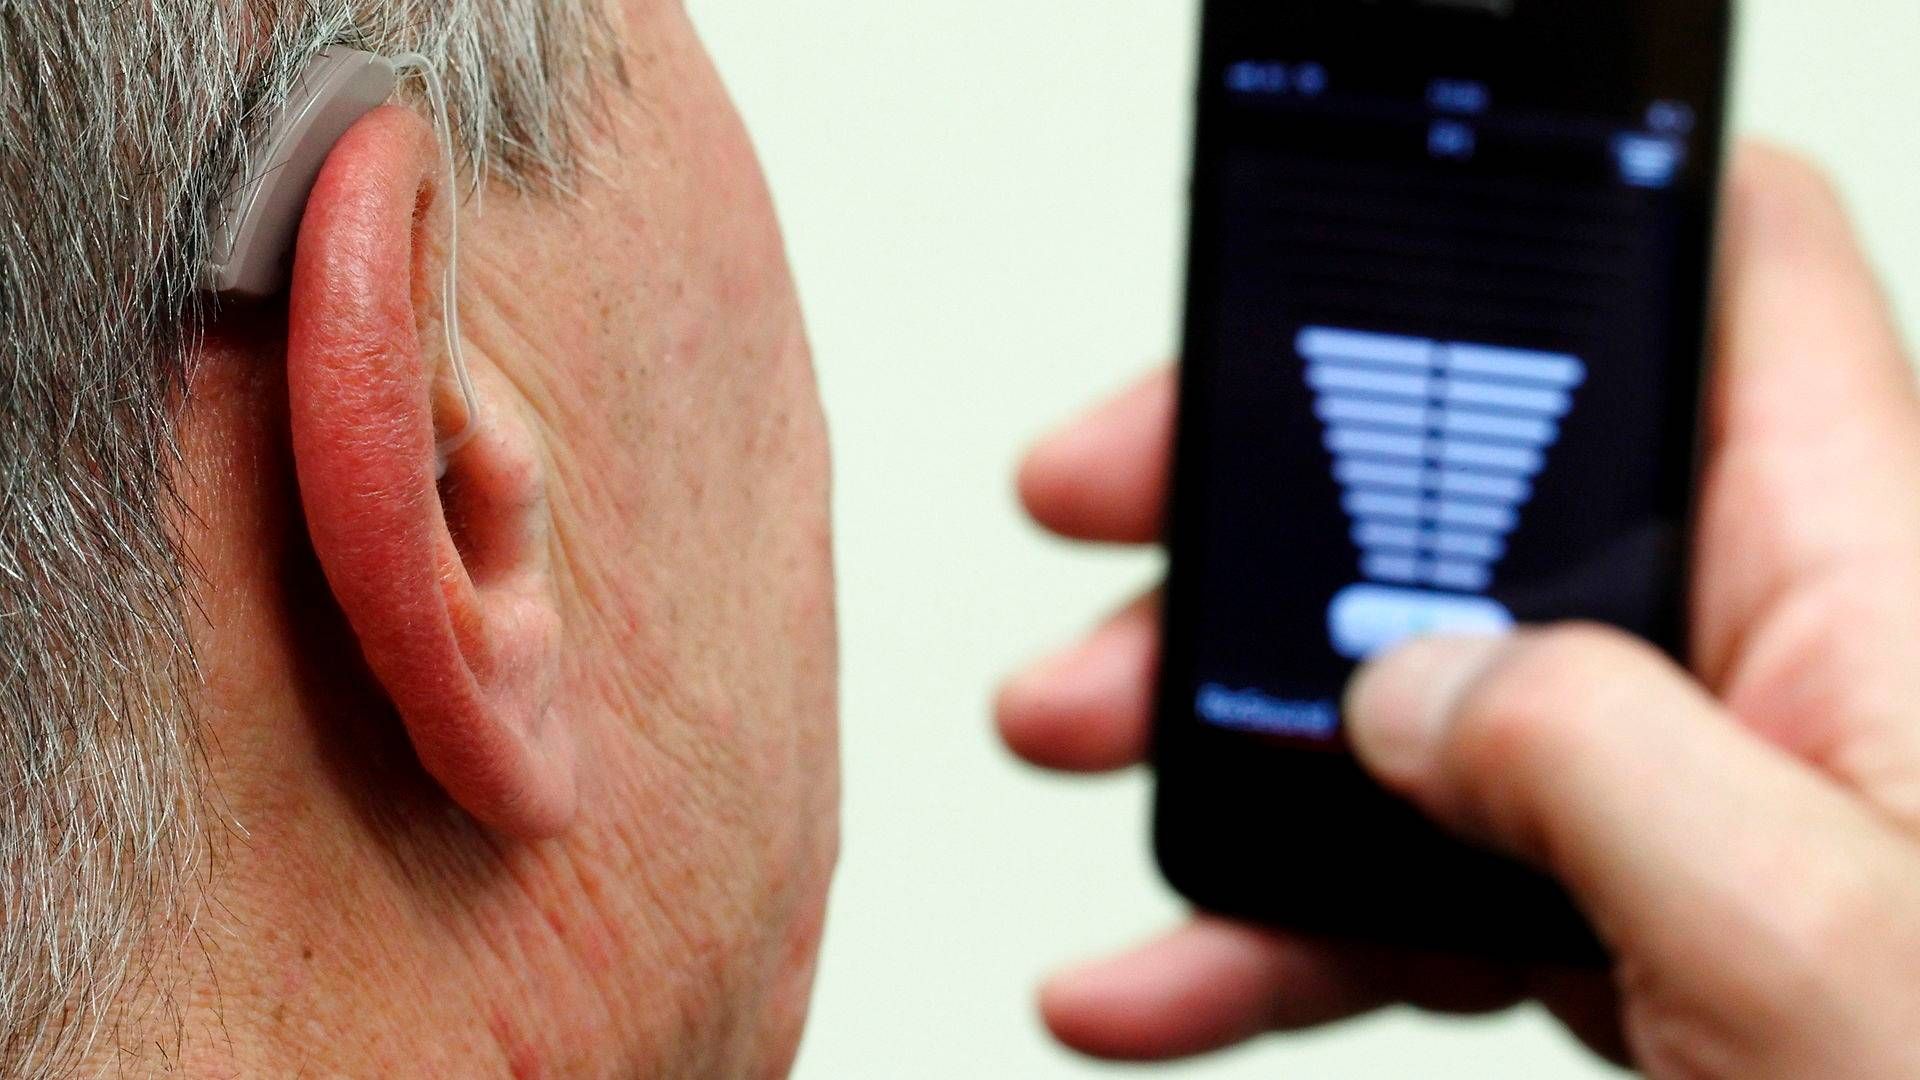 GN Hearings høreapparater er allerede kompatible med iPhone, og nu skal de også testes med android-telefoner. | Foto: Heinz-Peter Bader / Reuters / Ritzau Scanpix